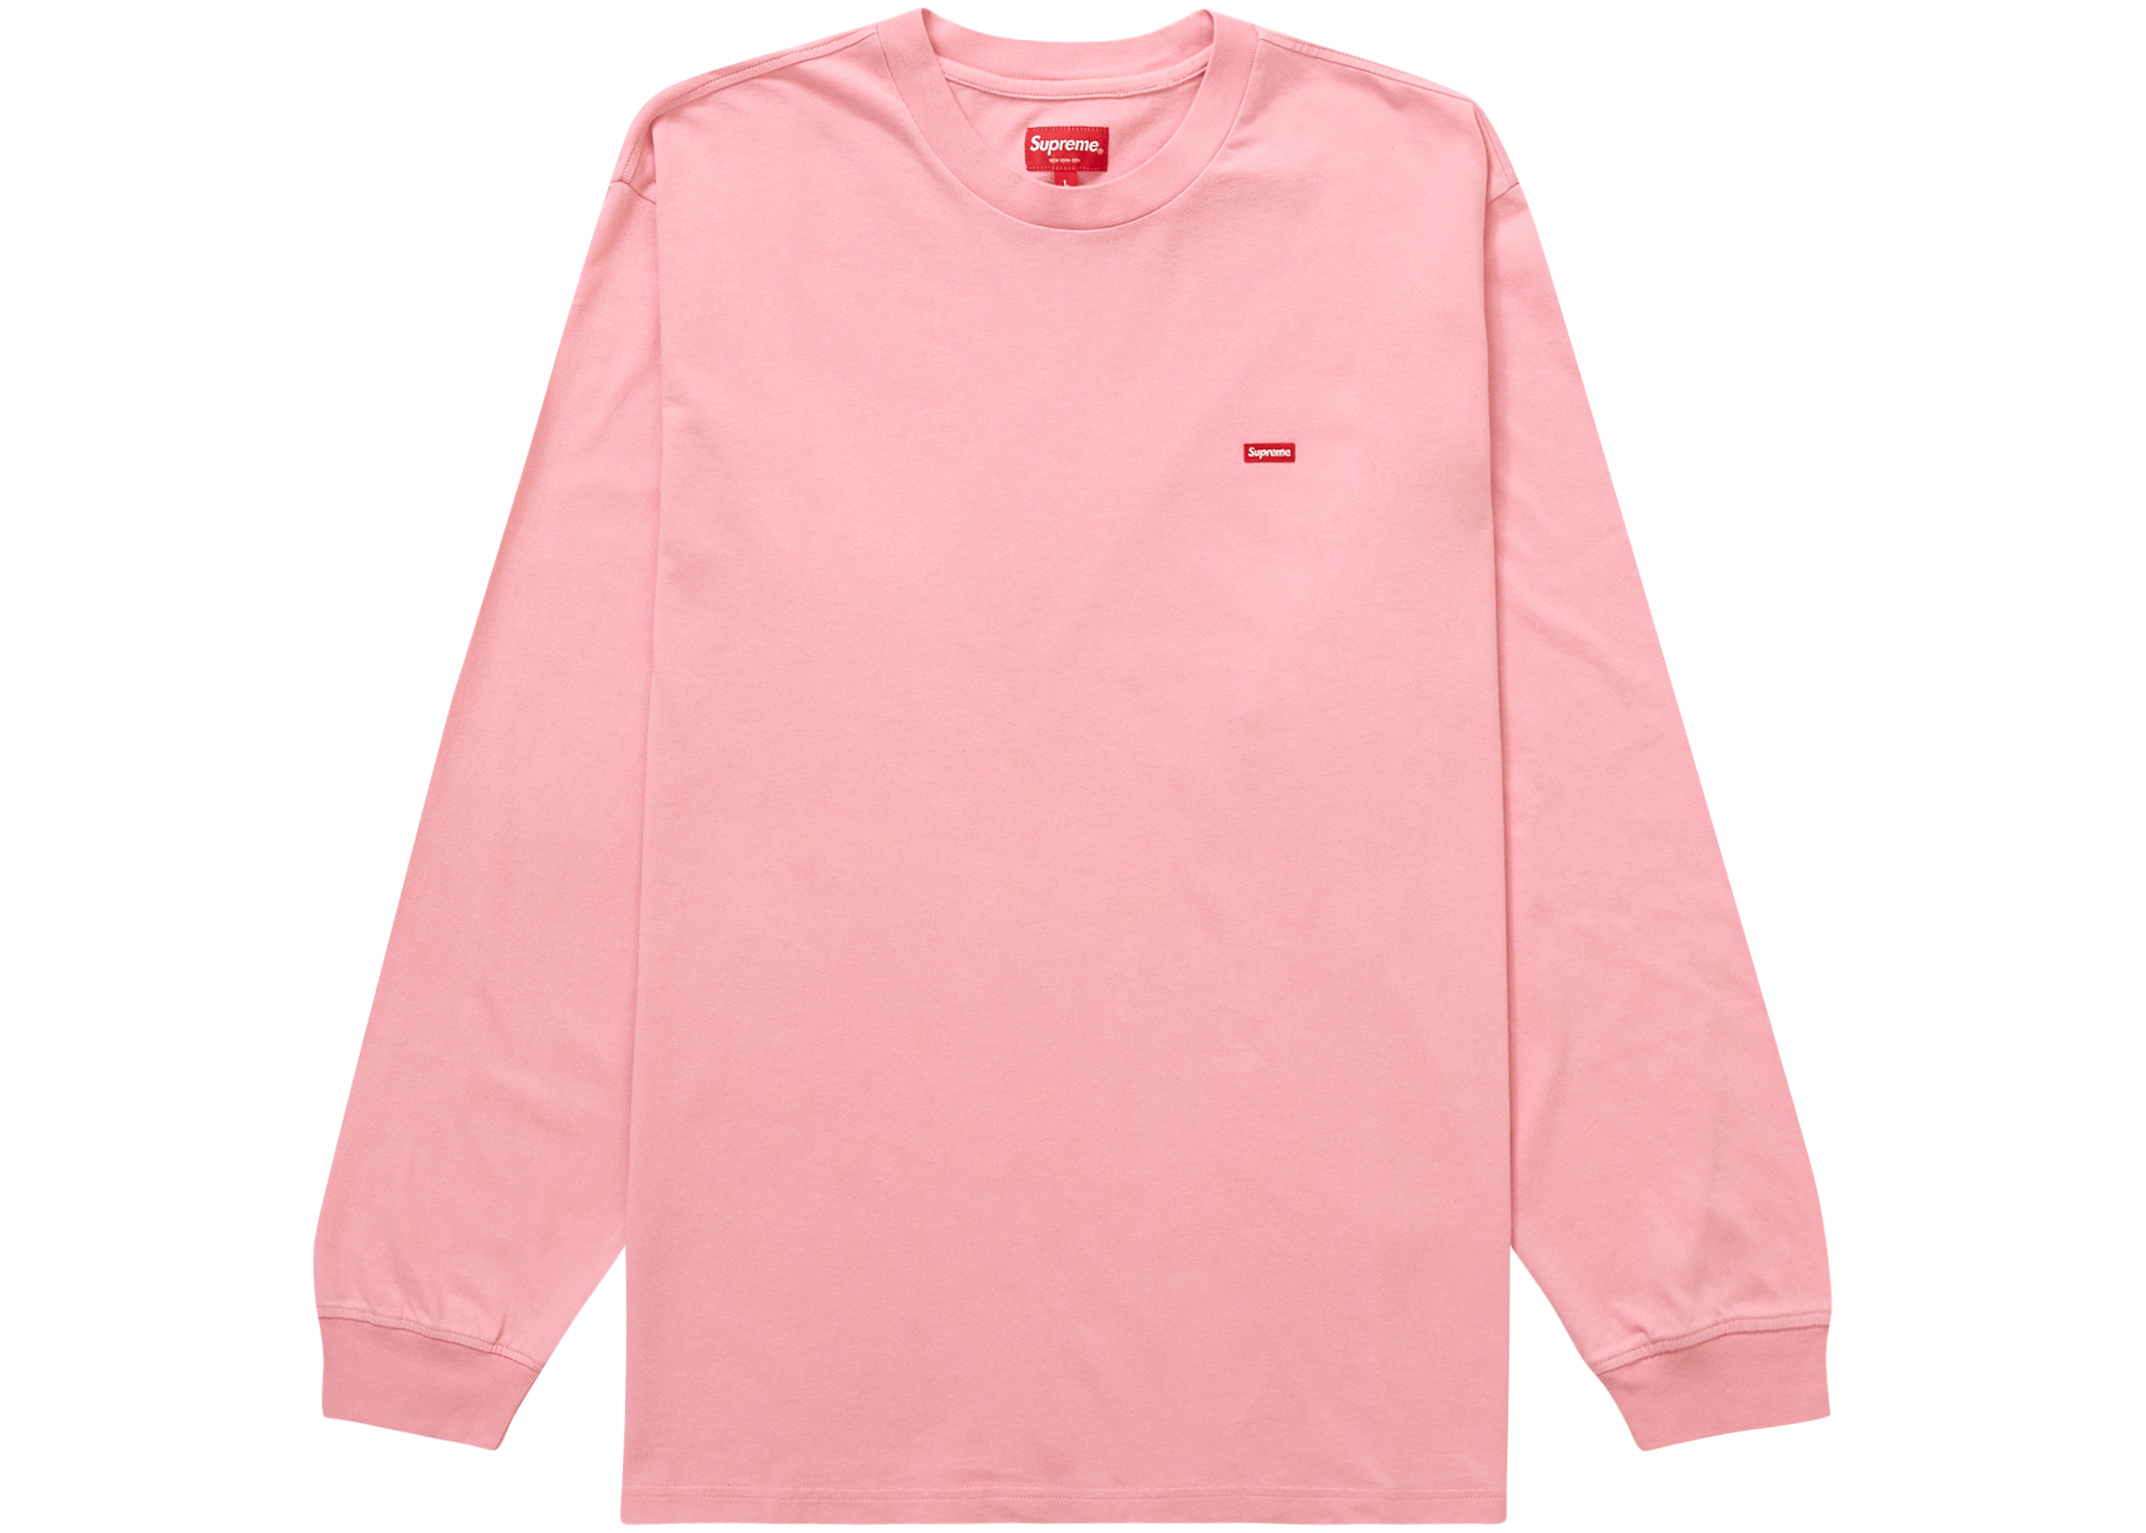 8,820円Supreme 21AW Small Box Twill Shirt ピンク